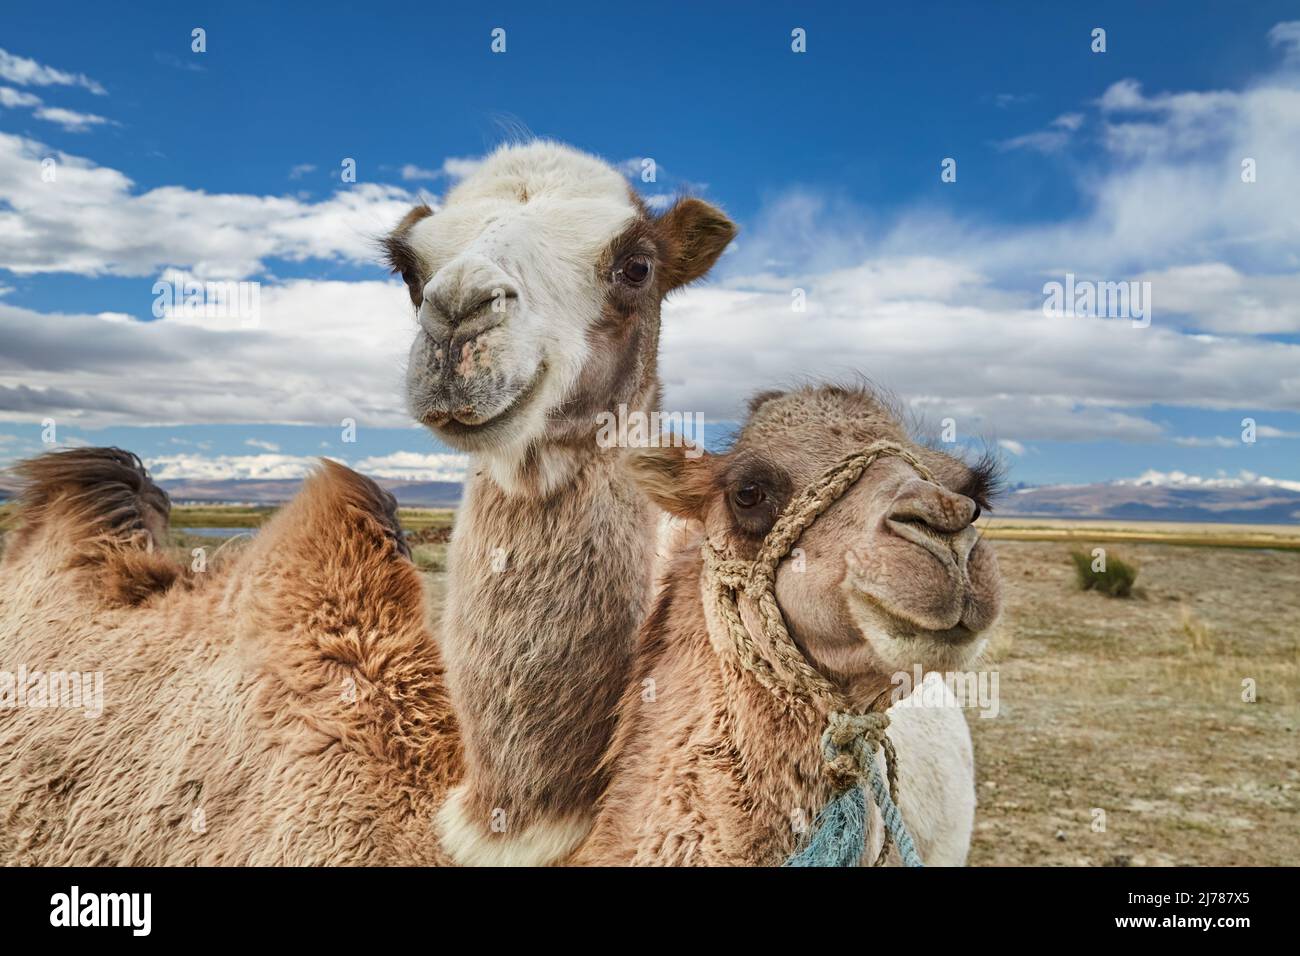 Deux chameaux de bactrian dans le désert mongol Banque D'Images